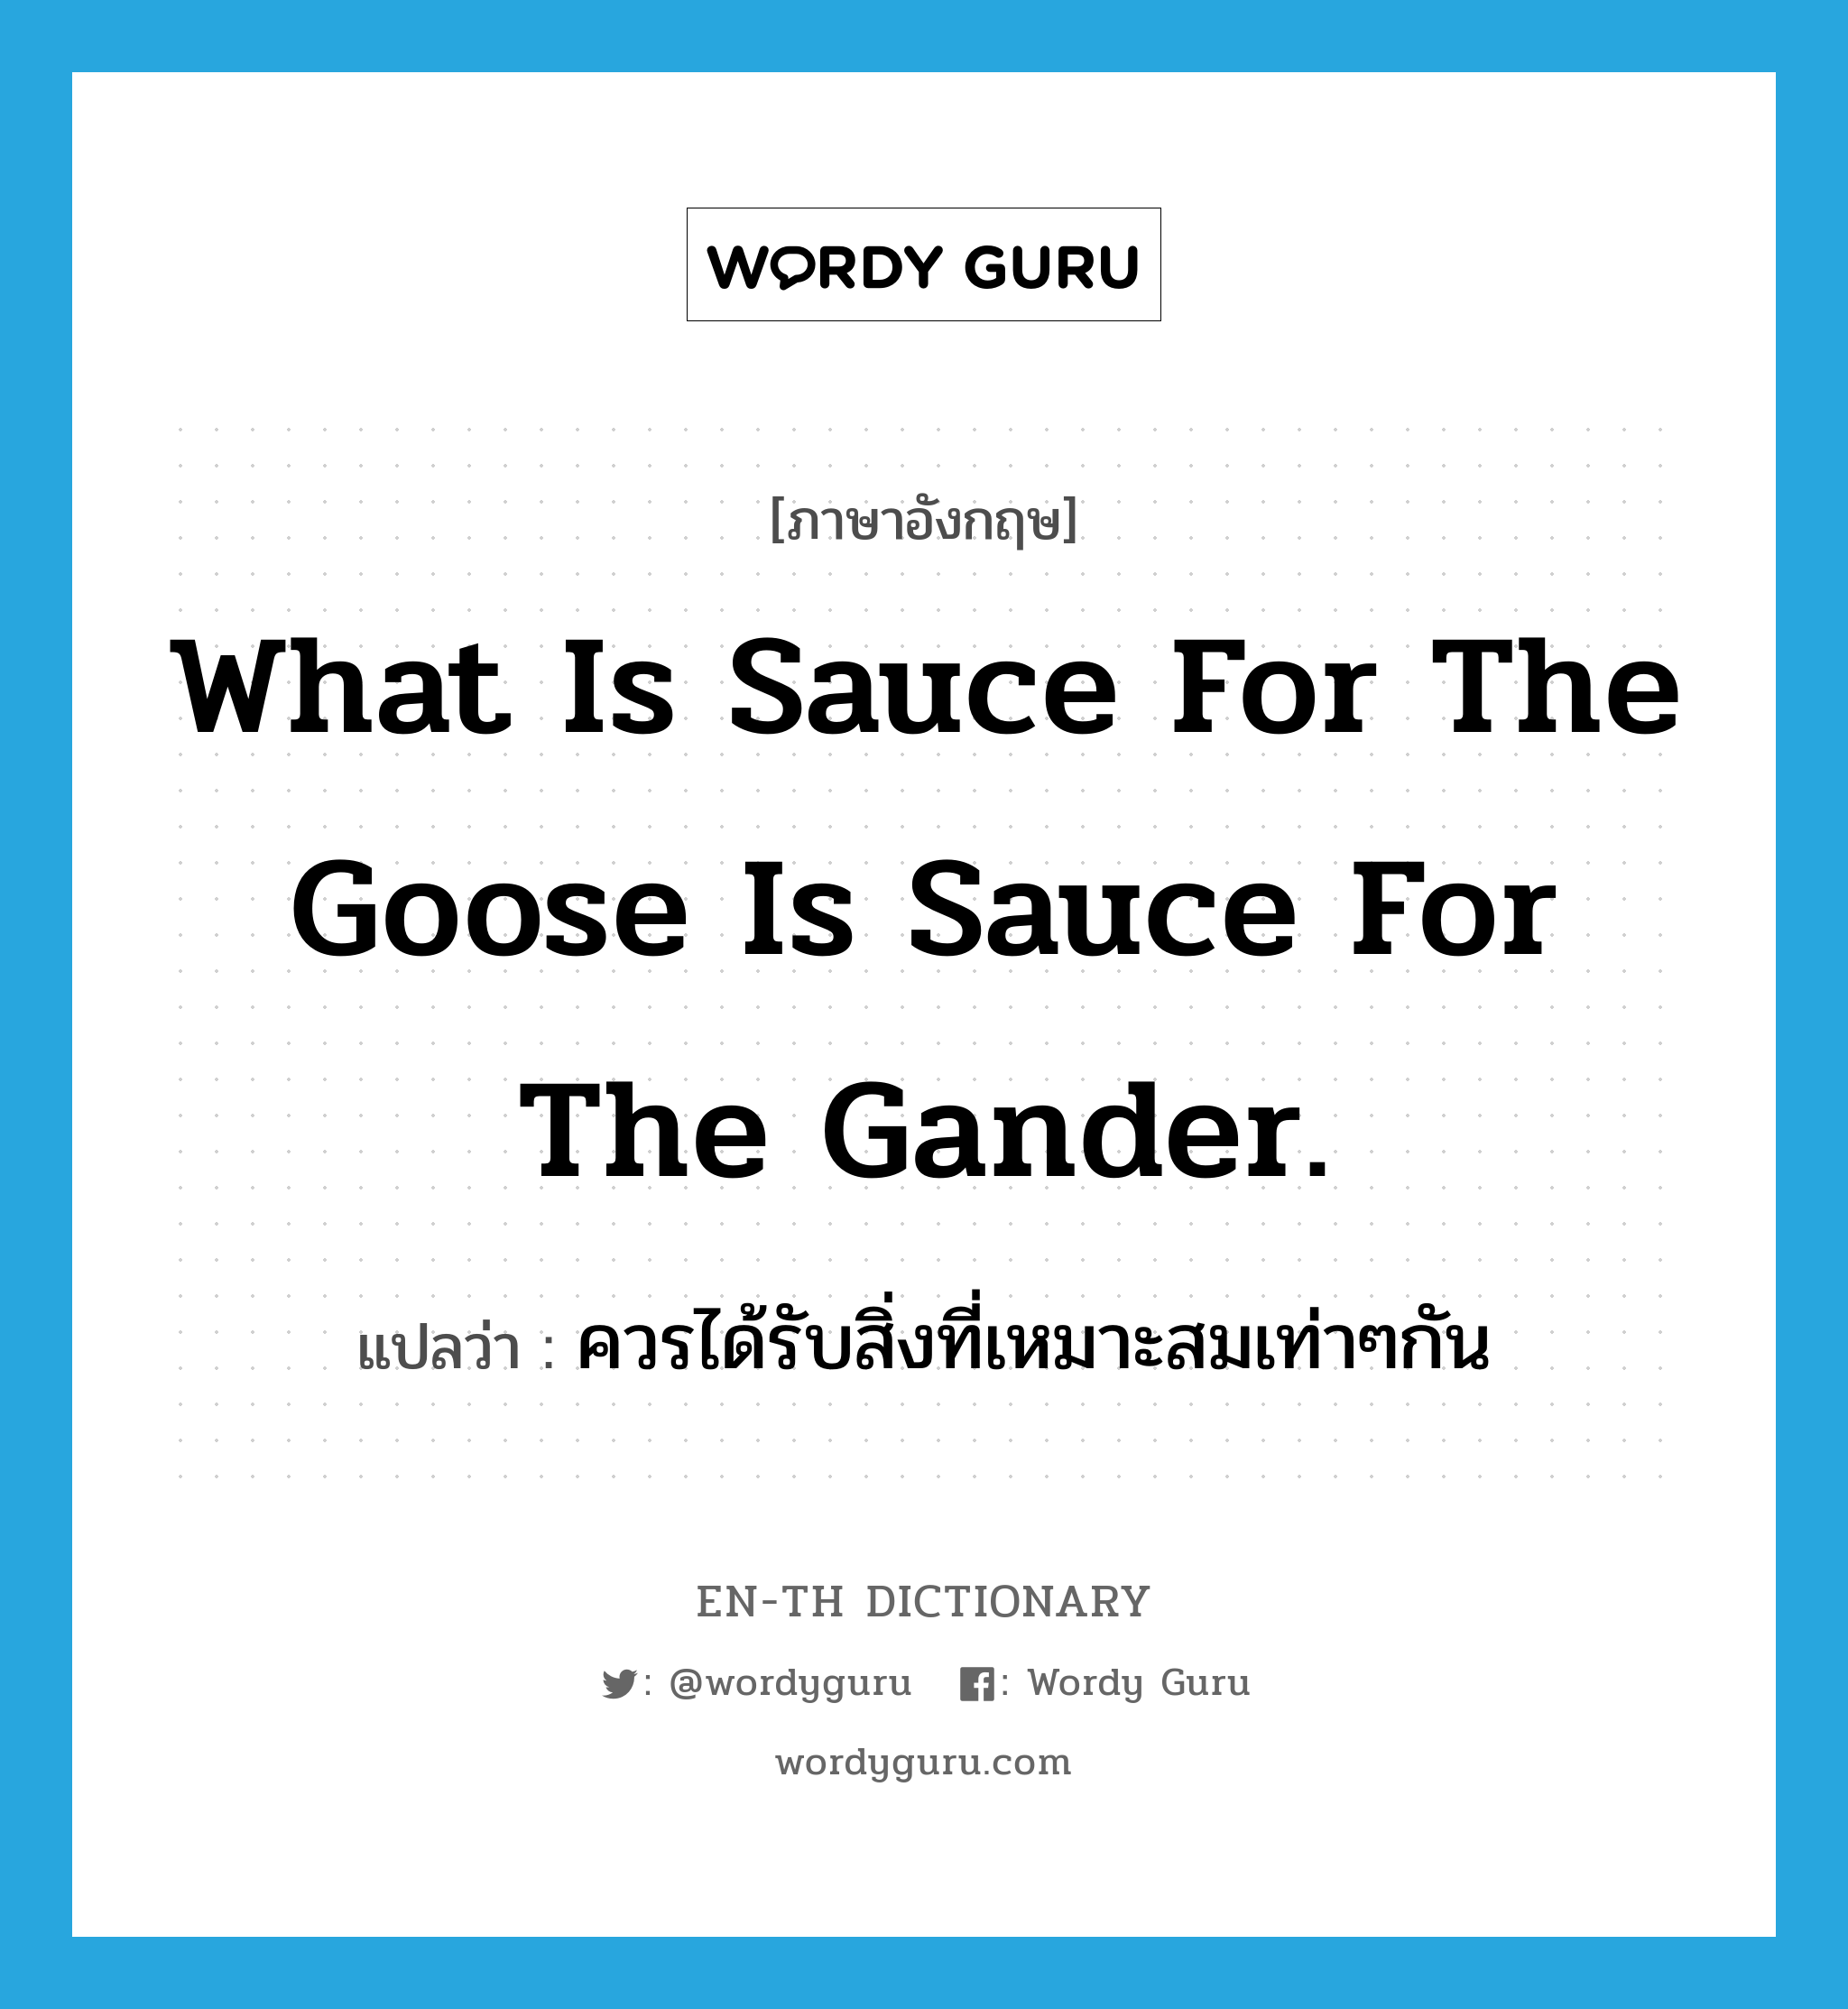 ควรได้รับสิ่งที่เหมาะสมเท่าๆกัน ภาษาอังกฤษ?, คำศัพท์ภาษาอังกฤษ ควรได้รับสิ่งที่เหมาะสมเท่าๆกัน แปลว่า What is sauce for the goose is sauce for the gander. ประเภท IDM หมวด IDM